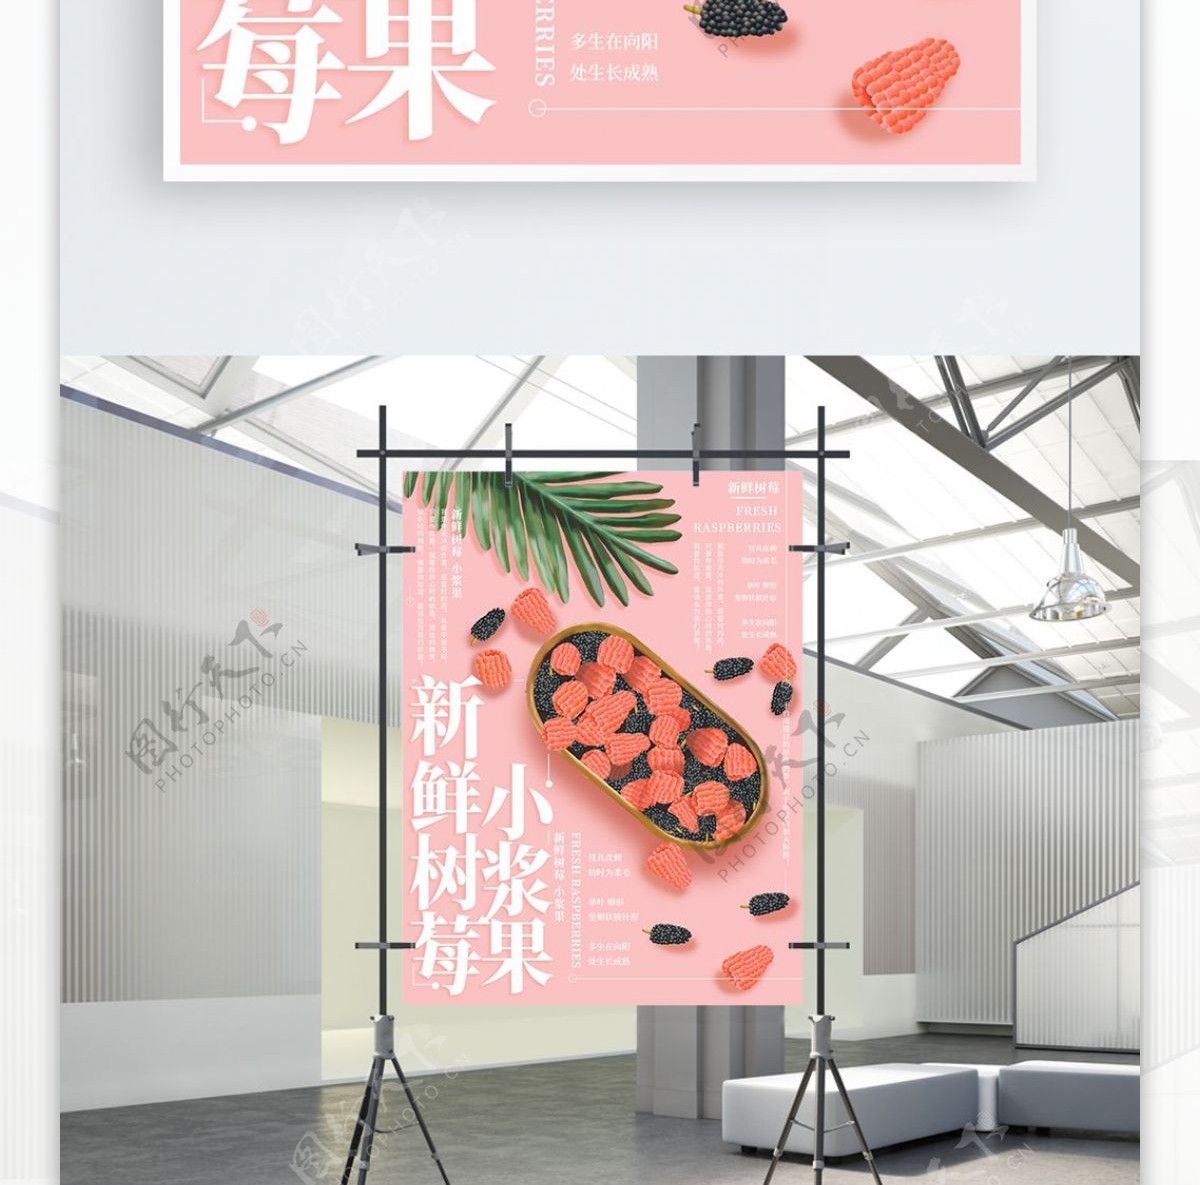 原创插画新鲜树莓水果海报